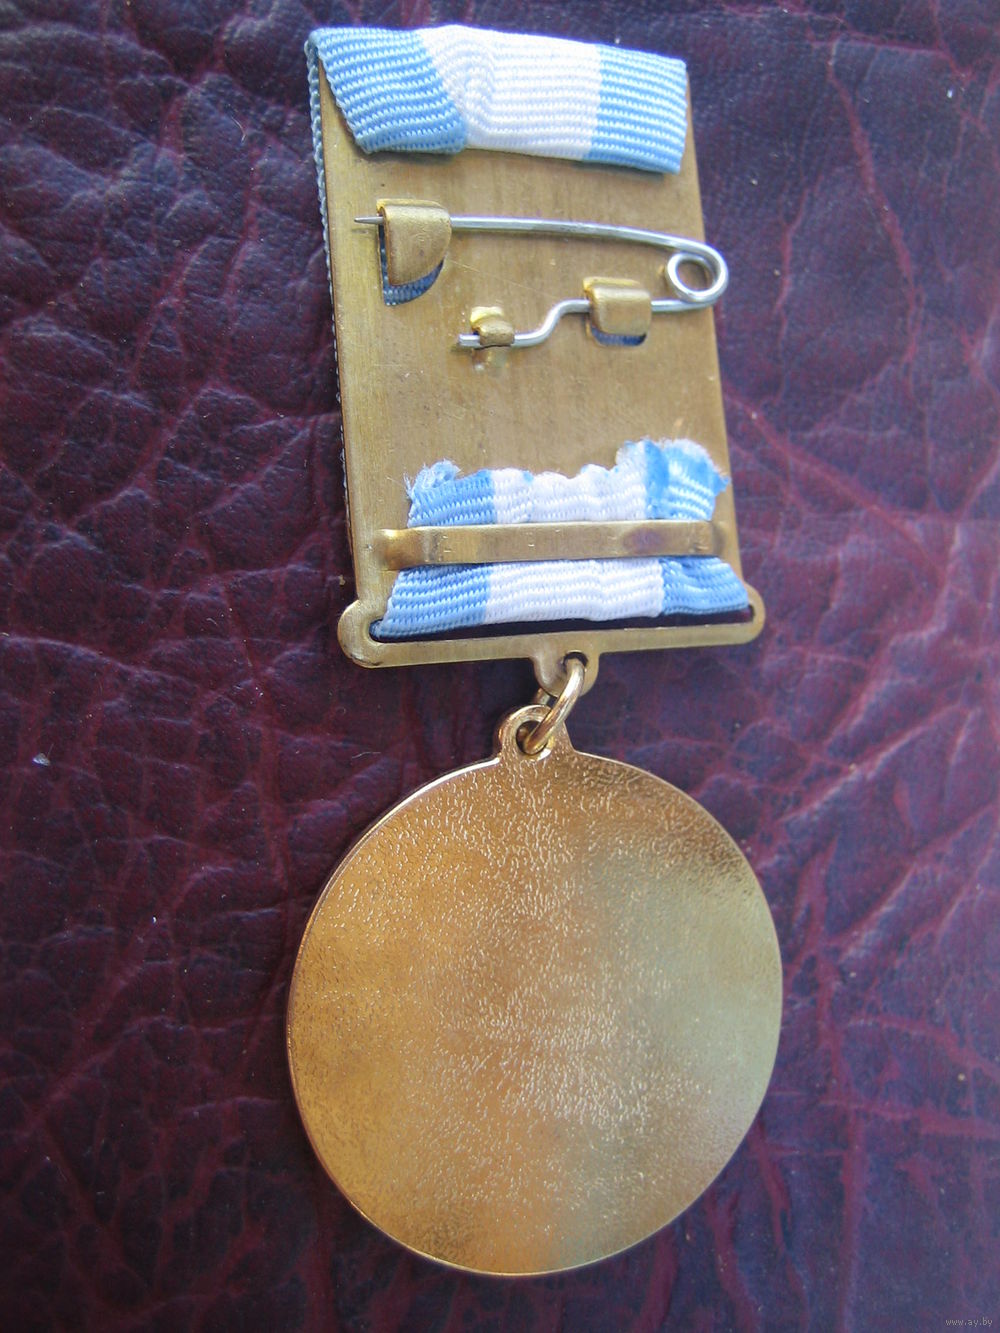 اوسمة و ميداليات الجيش الجزائري  - صفحة 13 5013490525_1